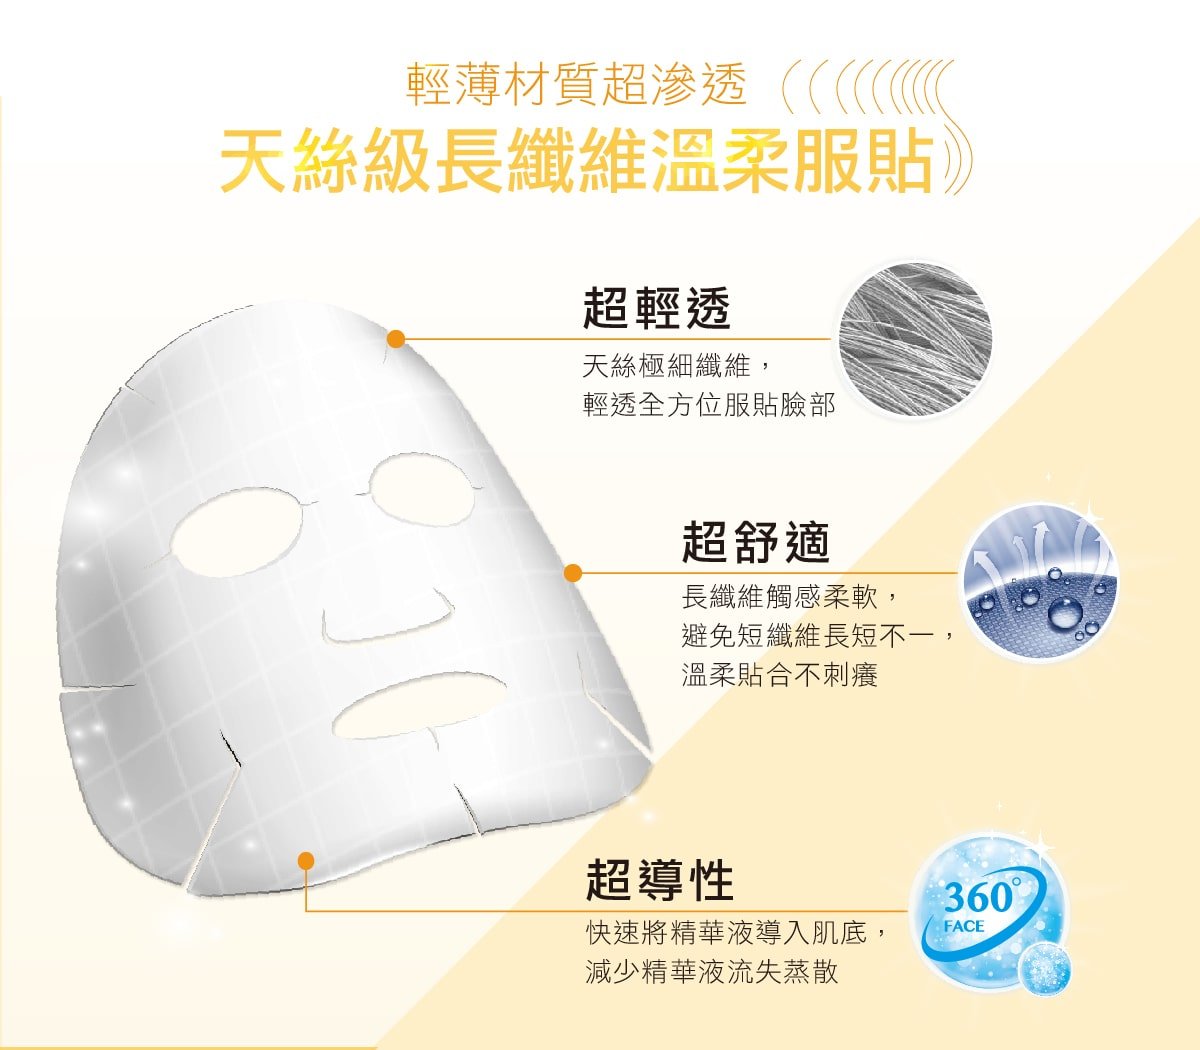  Skin Brighten Up Mask - Benefit